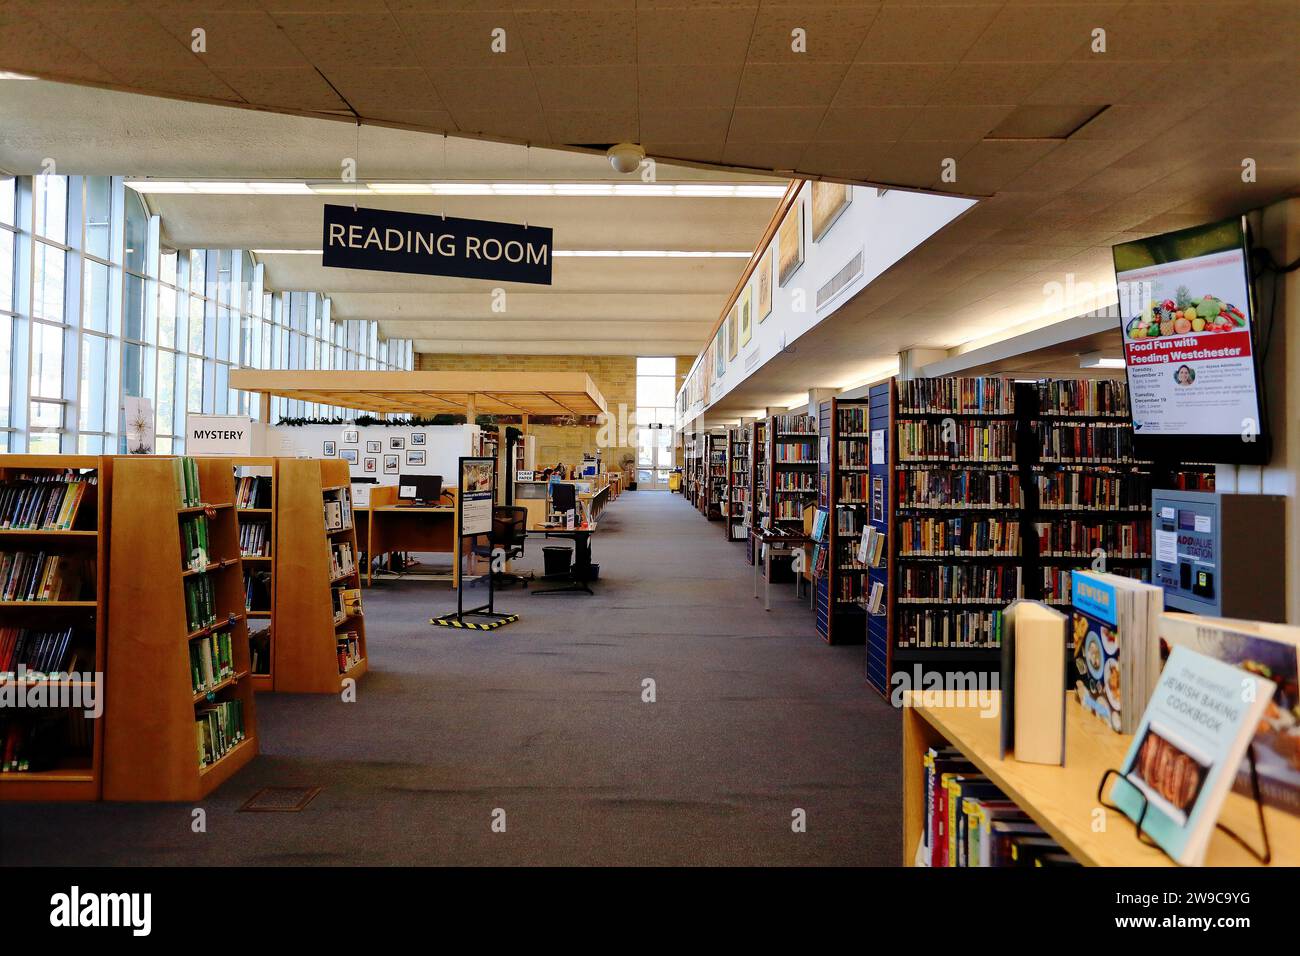 Salle de lecture au rez-de-chaussée, Grinton I. Will Library, Yonkers, NY Banque D'Images